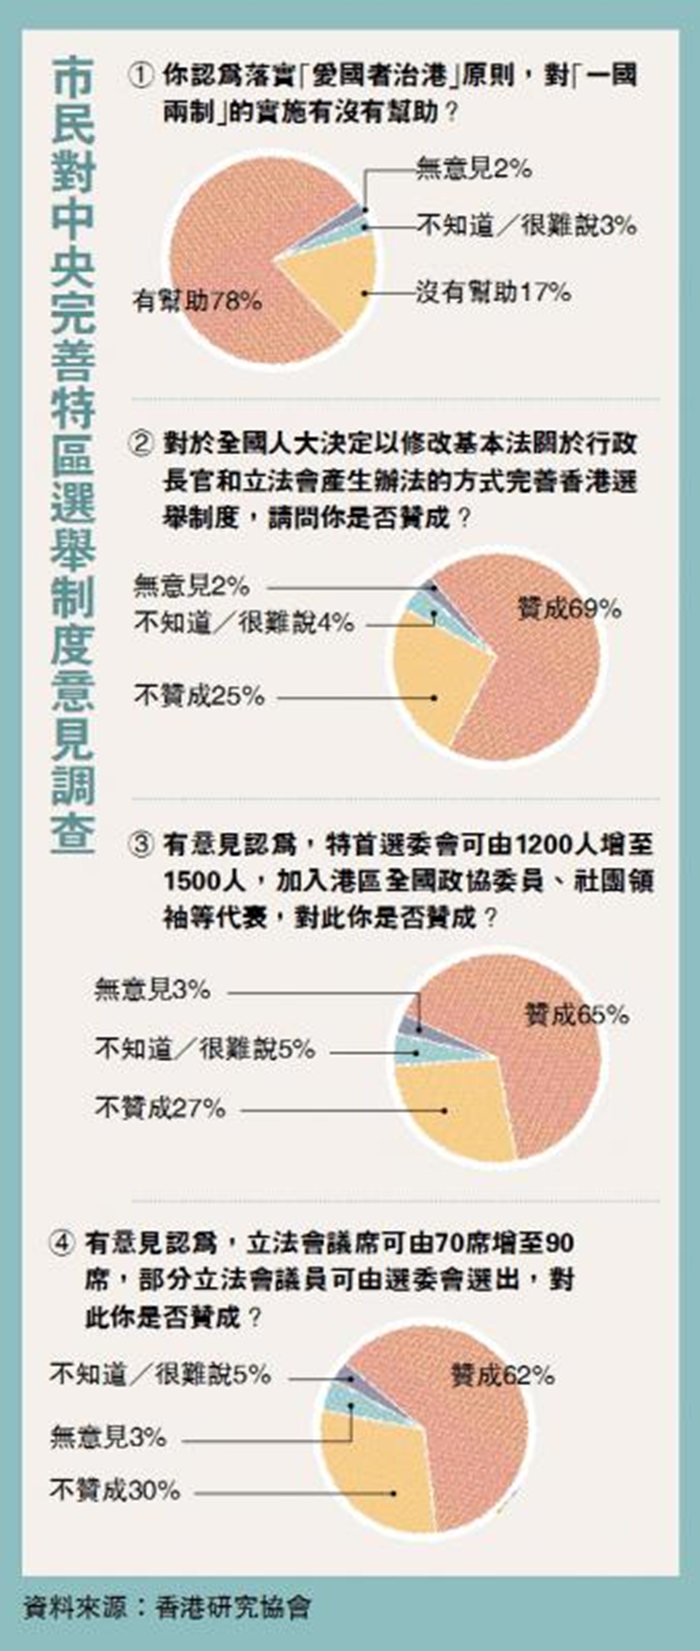 近七成市民赞成中央完善香港选举制度